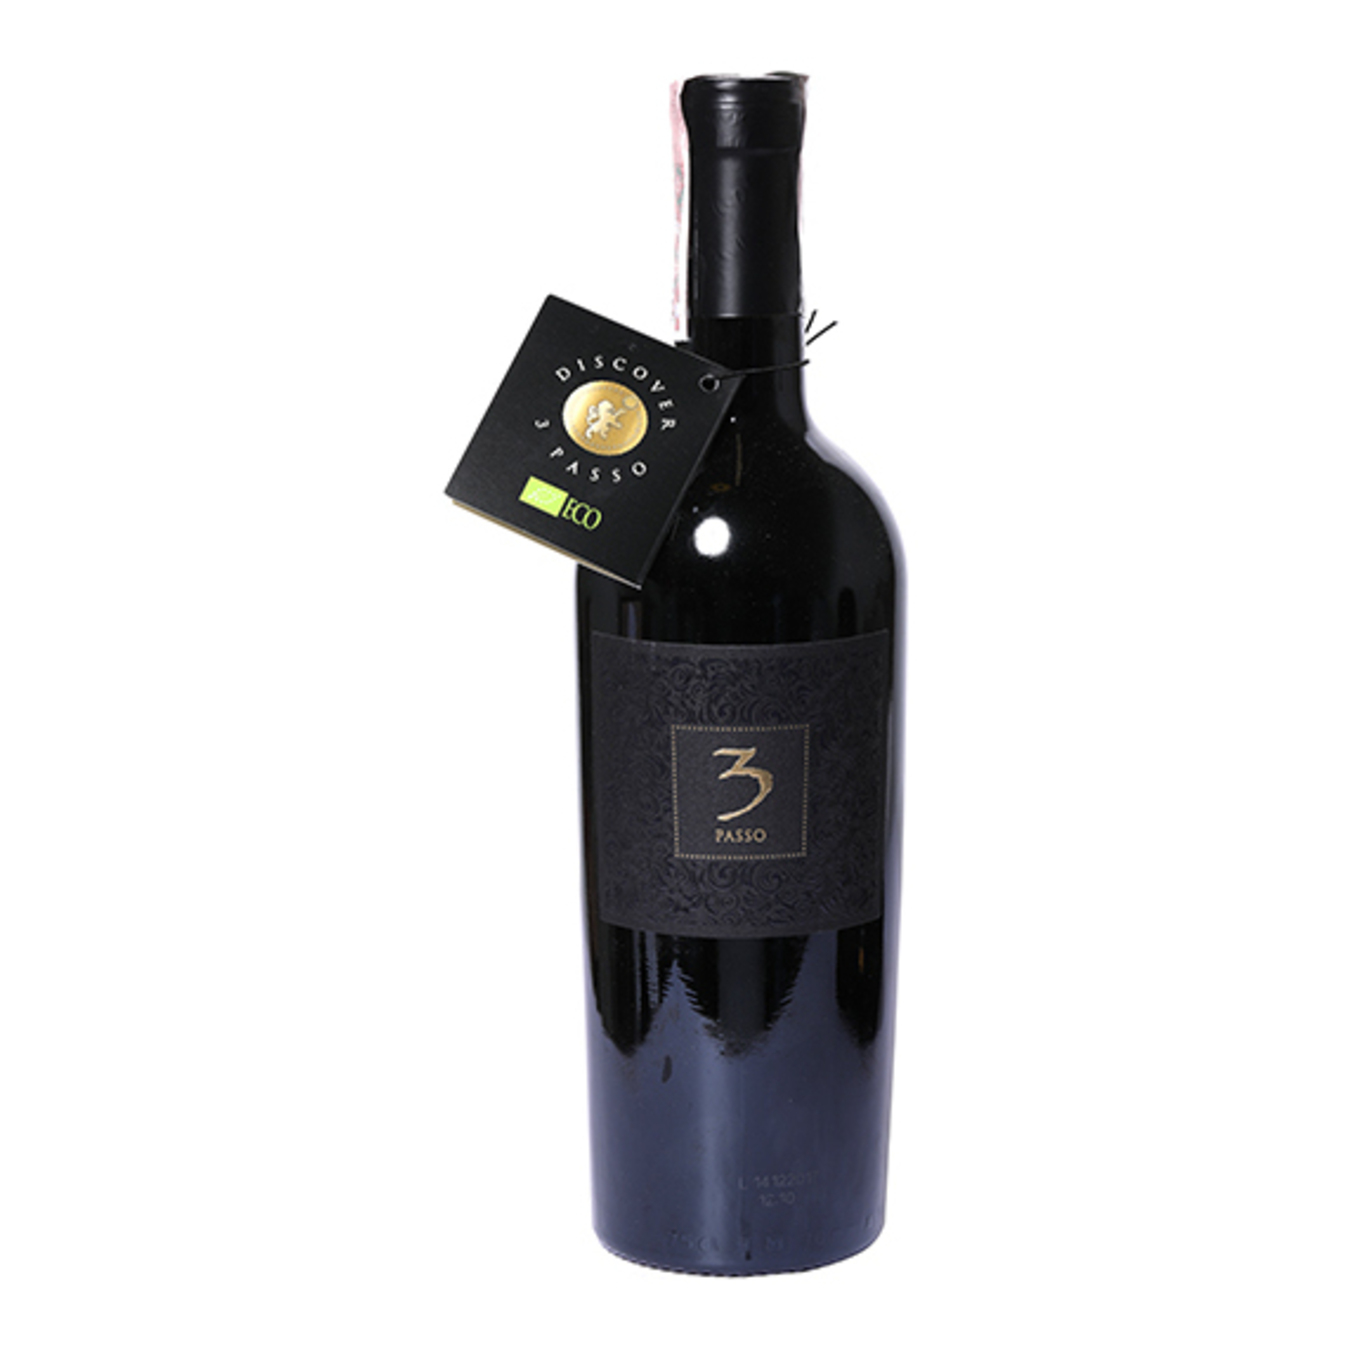 3 Passo Biologico red semi-dry wine 14% 0,75l